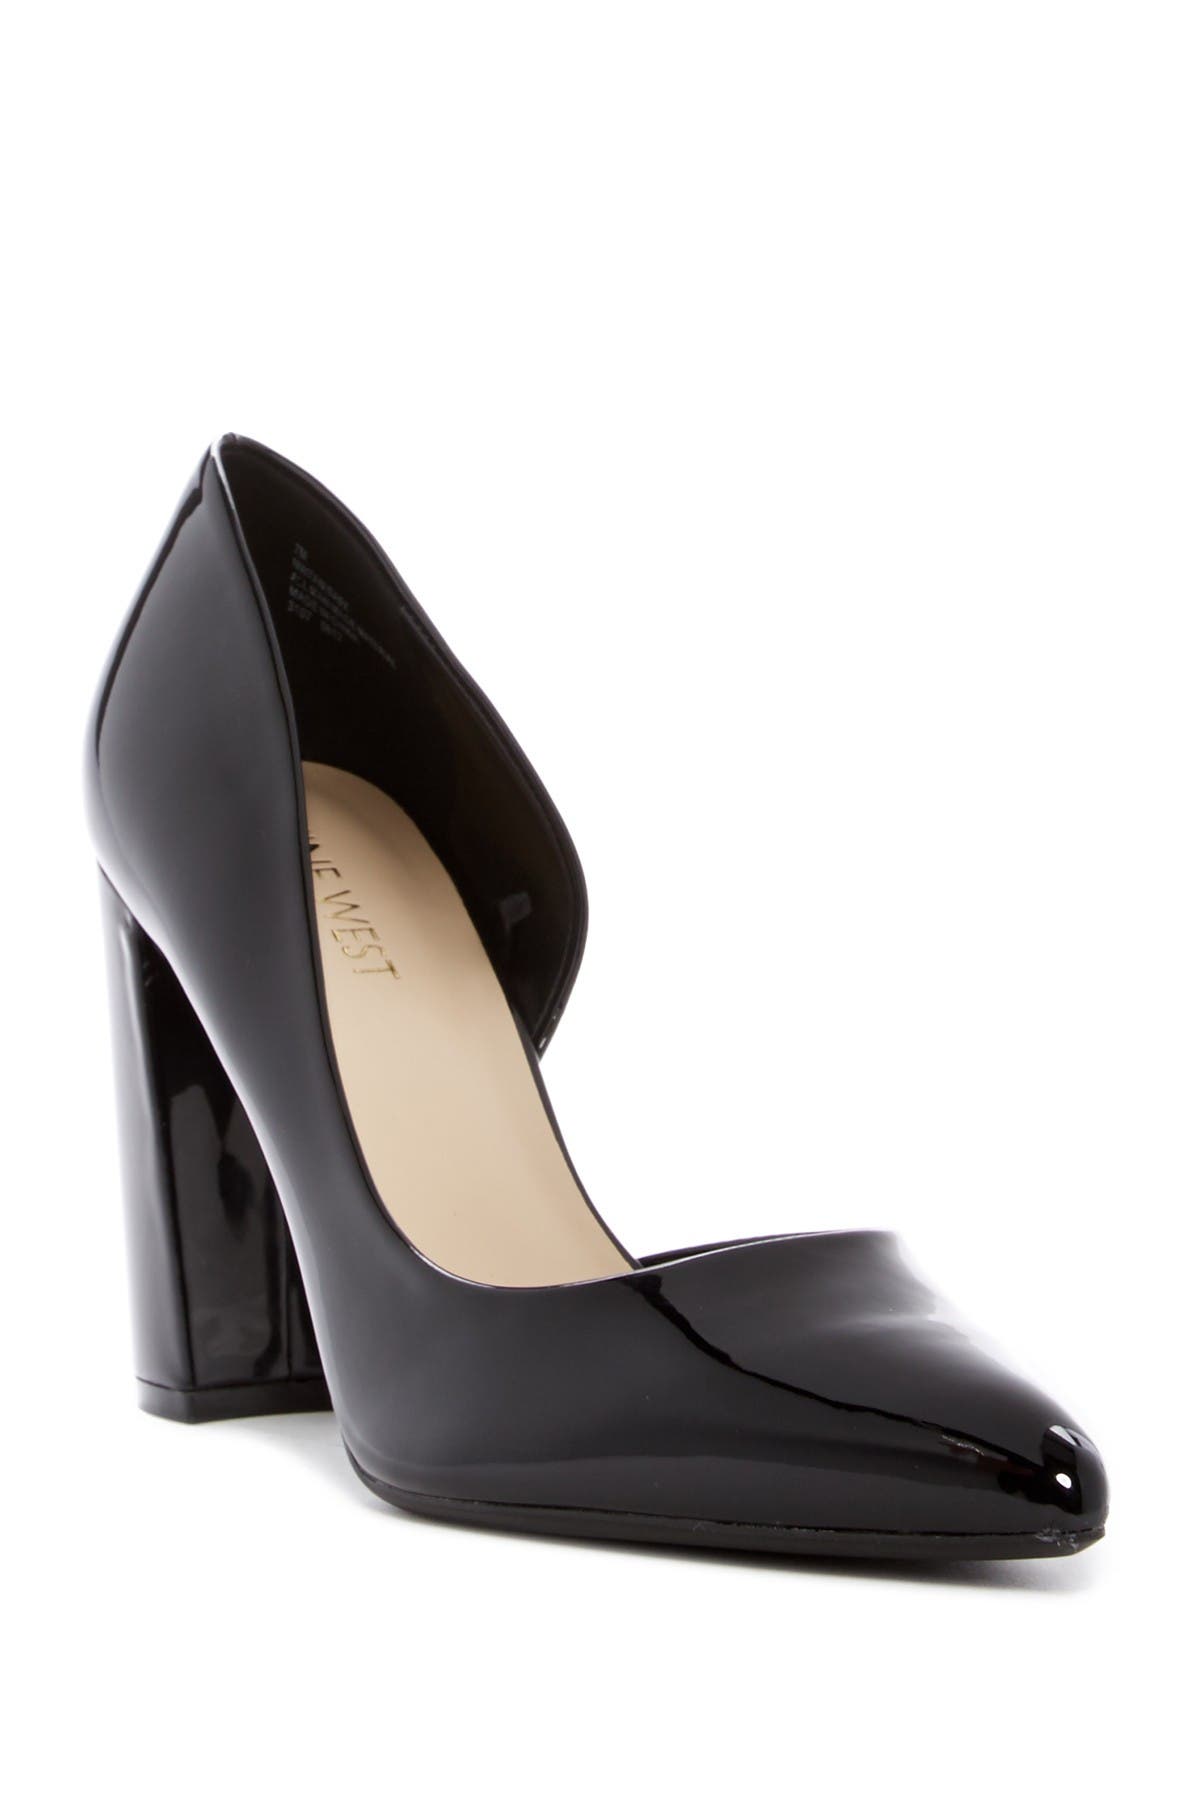 nine west heels pumps